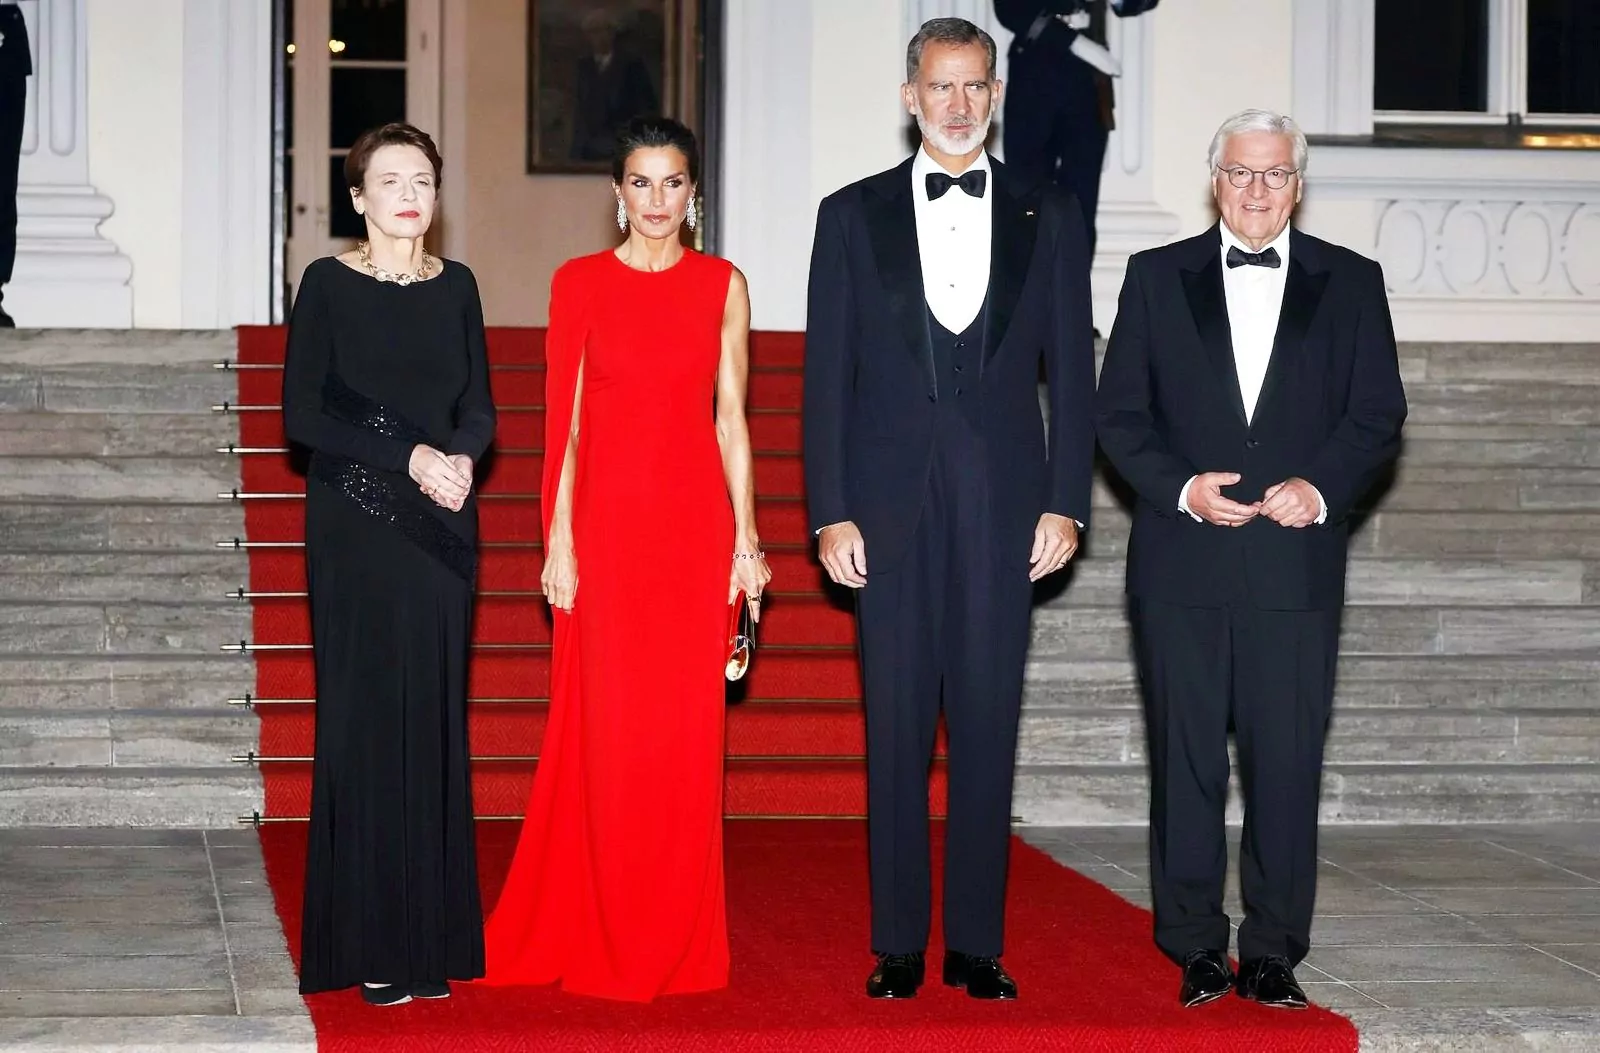 Первая леди Германии Эльке Бюденбендер, королева Летиция, король Филипп VI, президент Германии Франк-Вальтер Штайнмайер на государственном ужине в Берлине, 17 октября 2022 г.